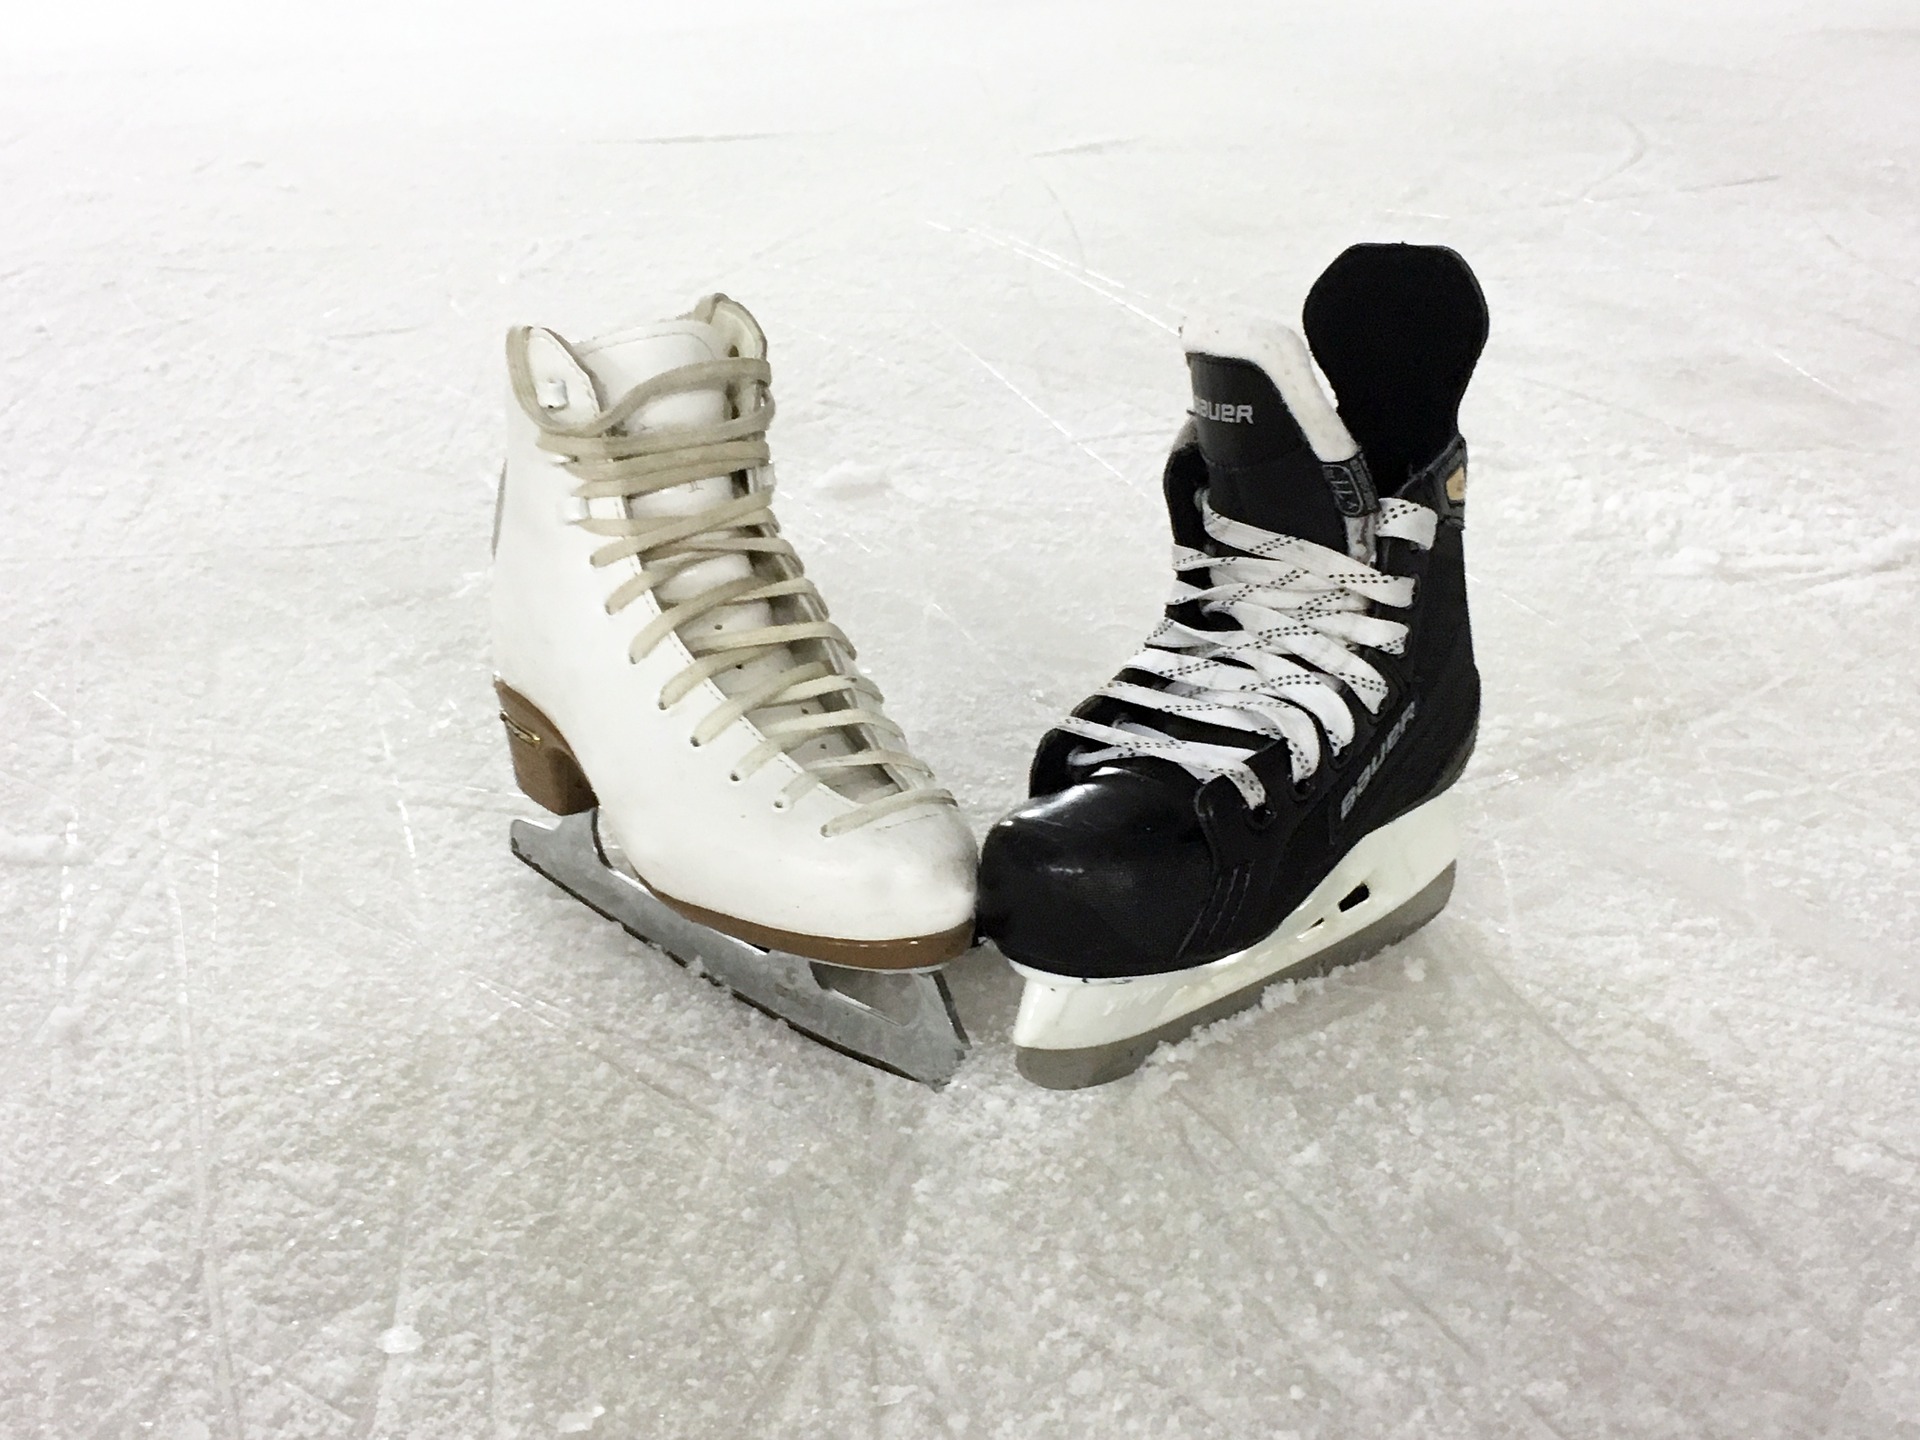 ice-skating-1215114_1920